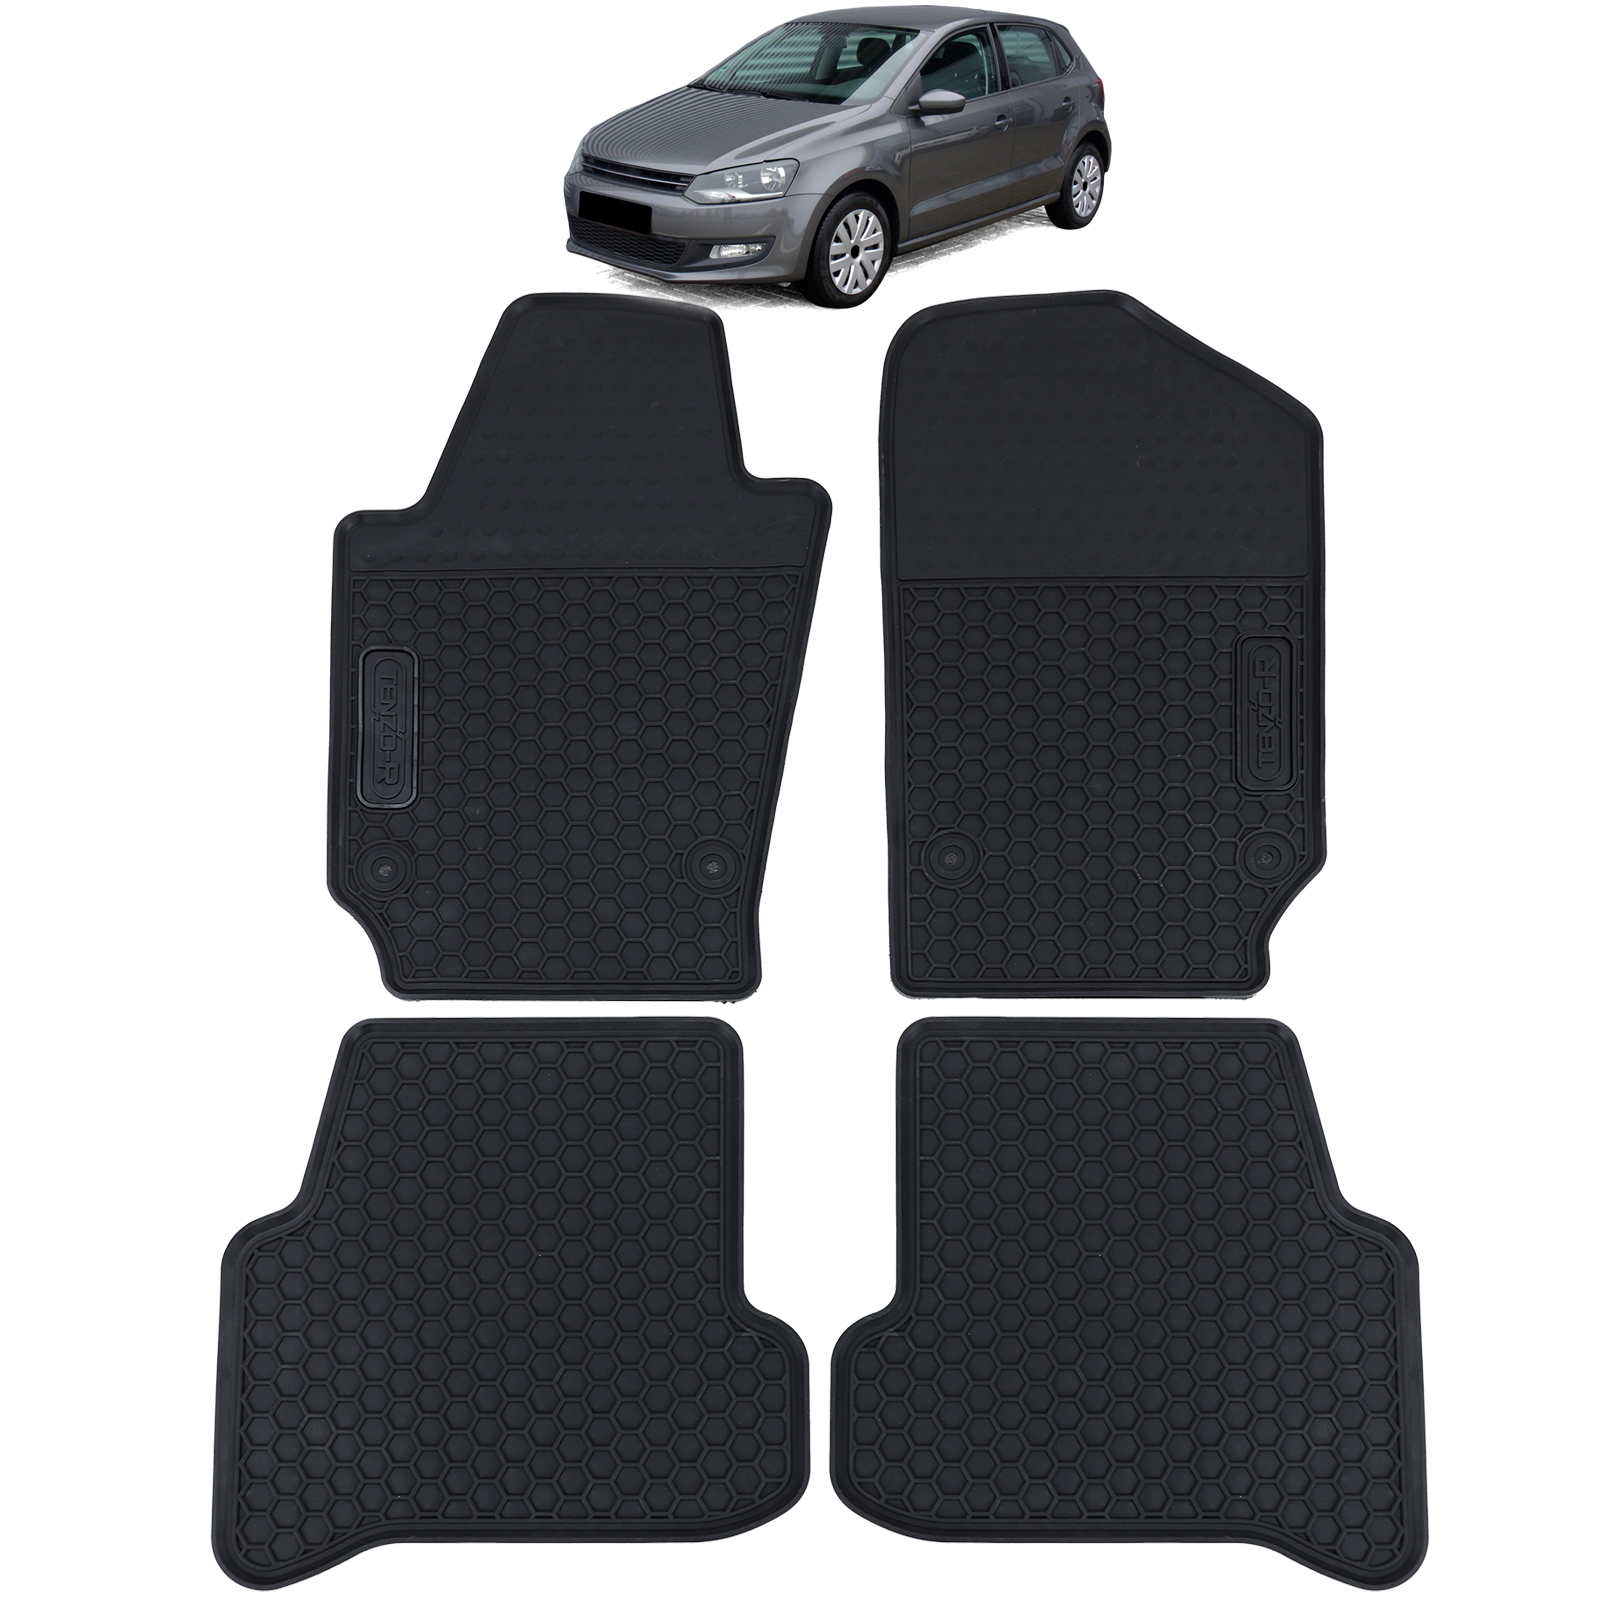 Auto Gummi Fußmatten Schwarz Premium Set für VW Polo 6R 6C 09-17 kaufen